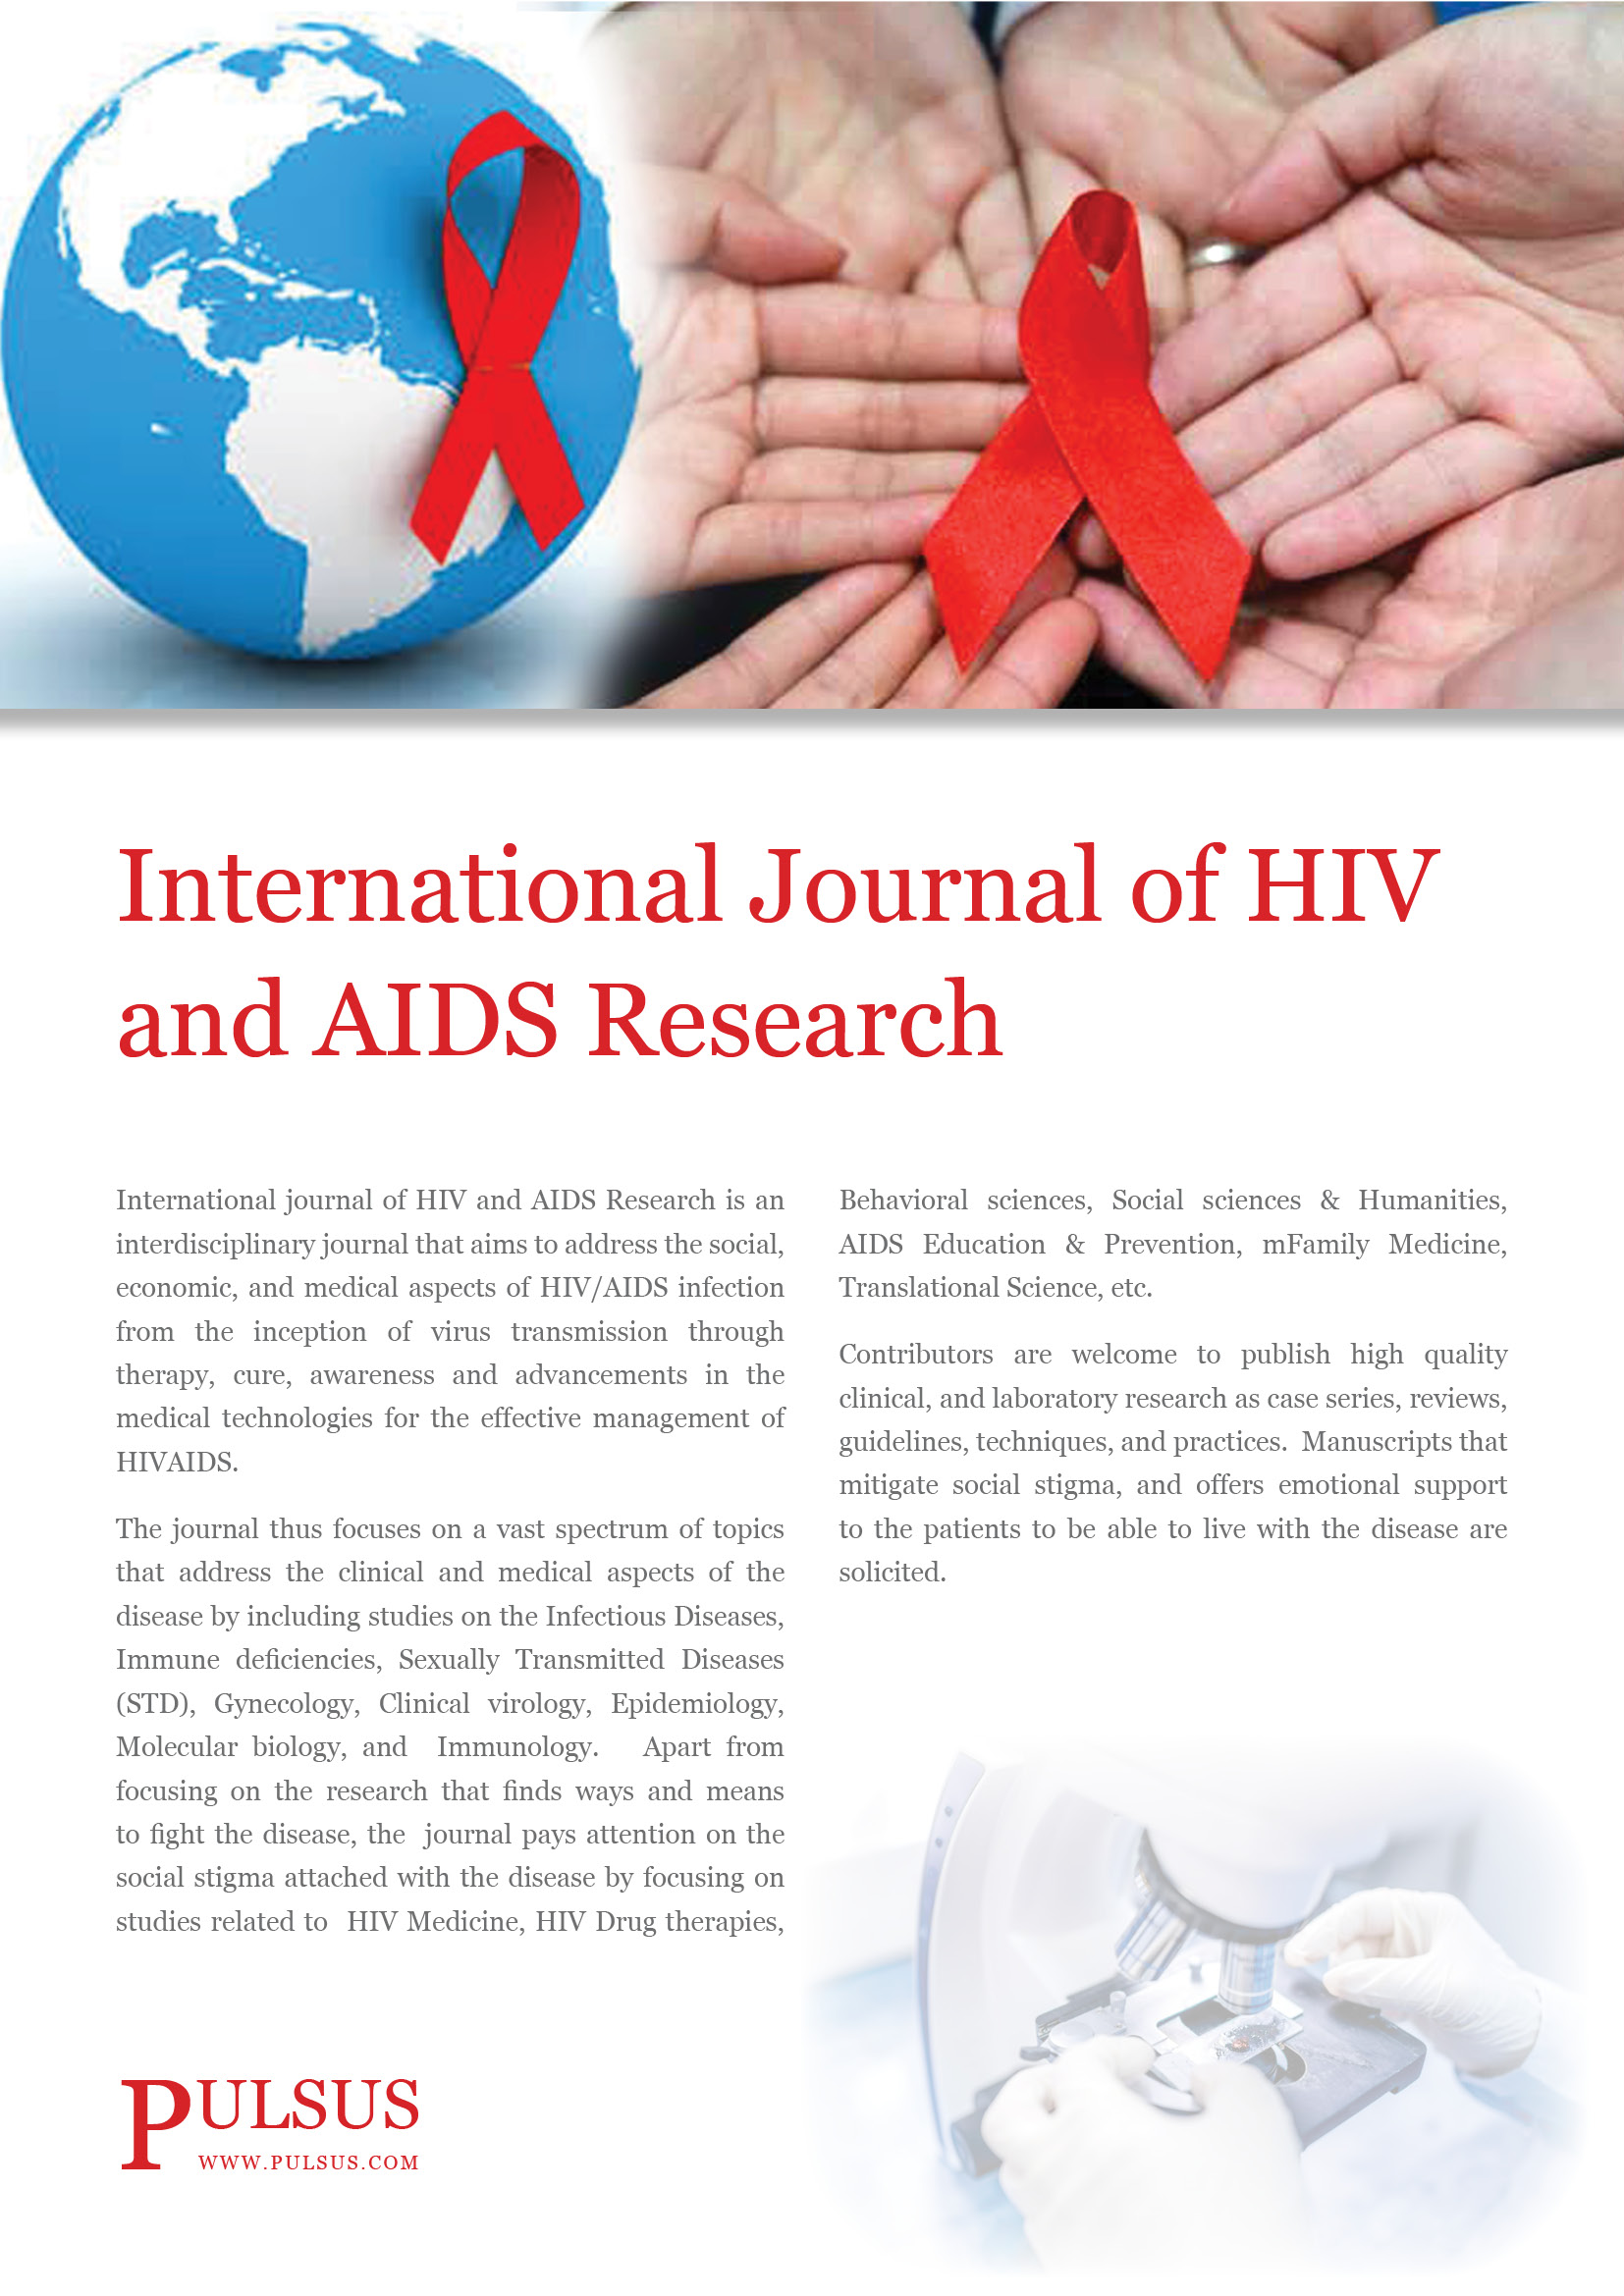 ఇంటర్నేషనల్ జర్నల్ ఆఫ్ HIV మరియు AIDS రీసెర్చ్